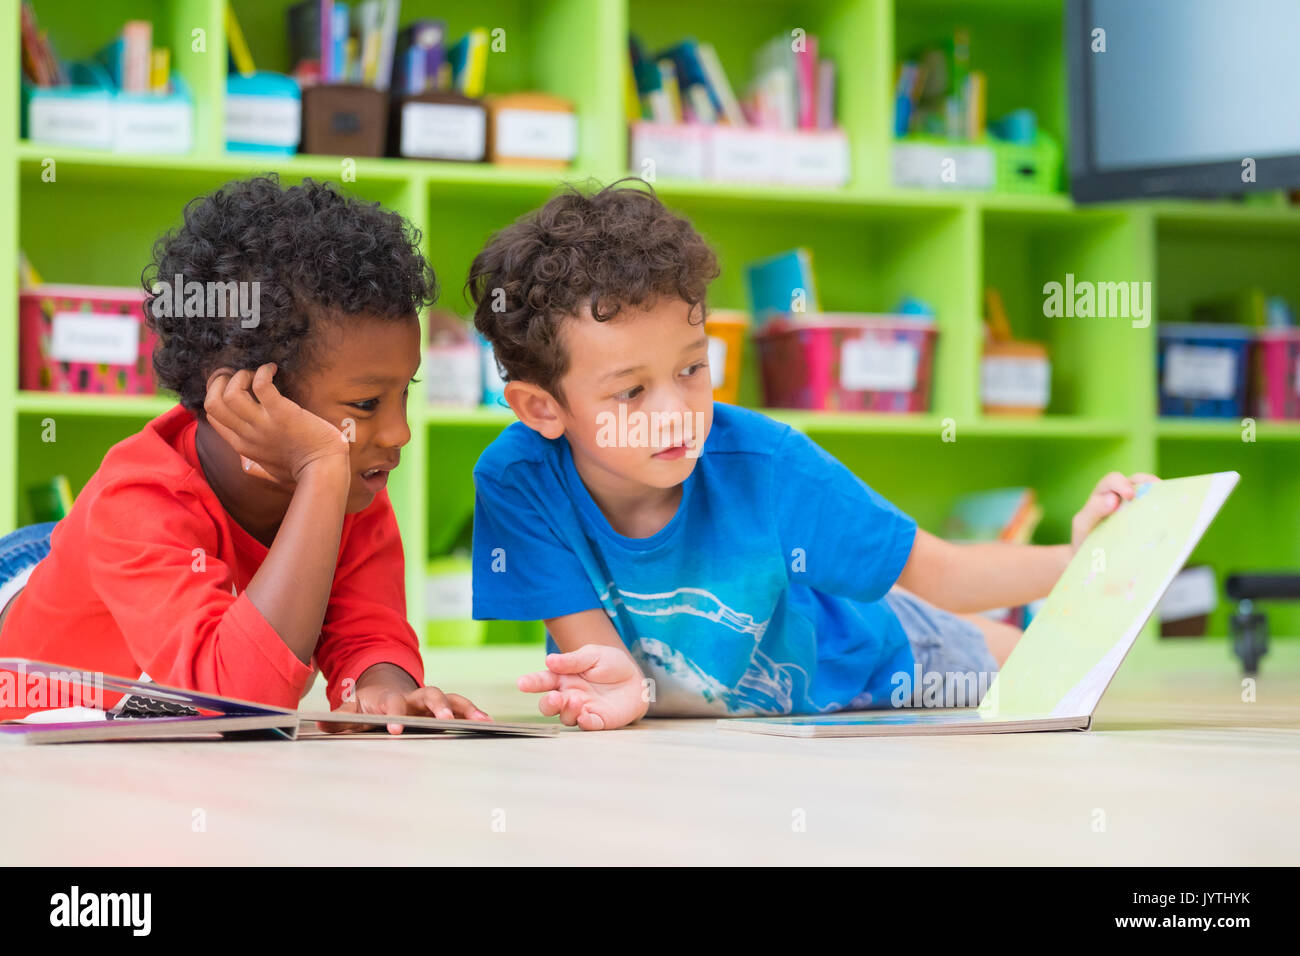 Zwei junge Kind legte sich auf den Boden und lesen Märchen Buch im Kindergarten Bibliothek, Kindergarten Schule Ausbildung Konzept. Stockfoto